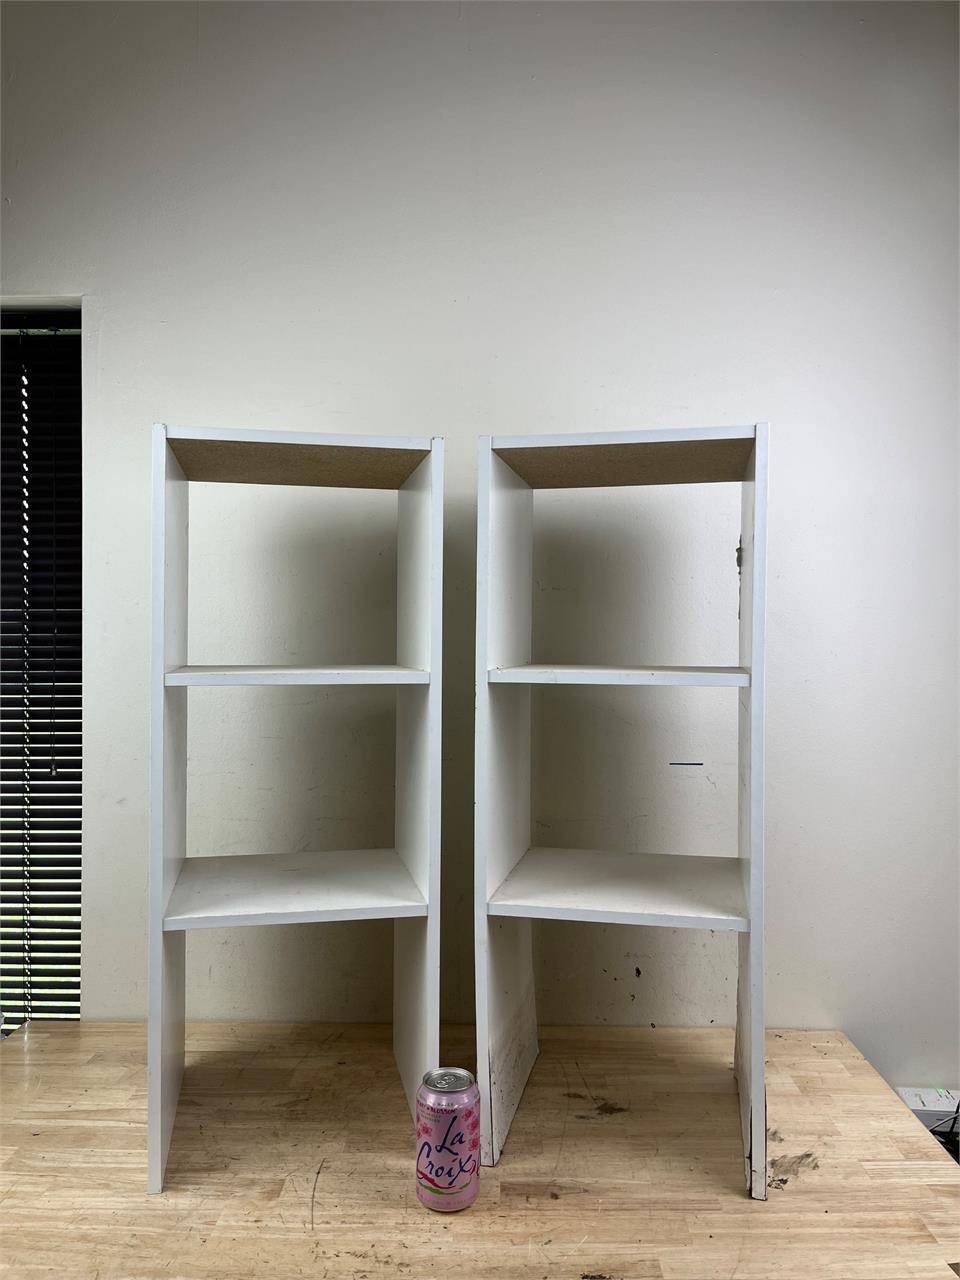 Two white wooden shelves B